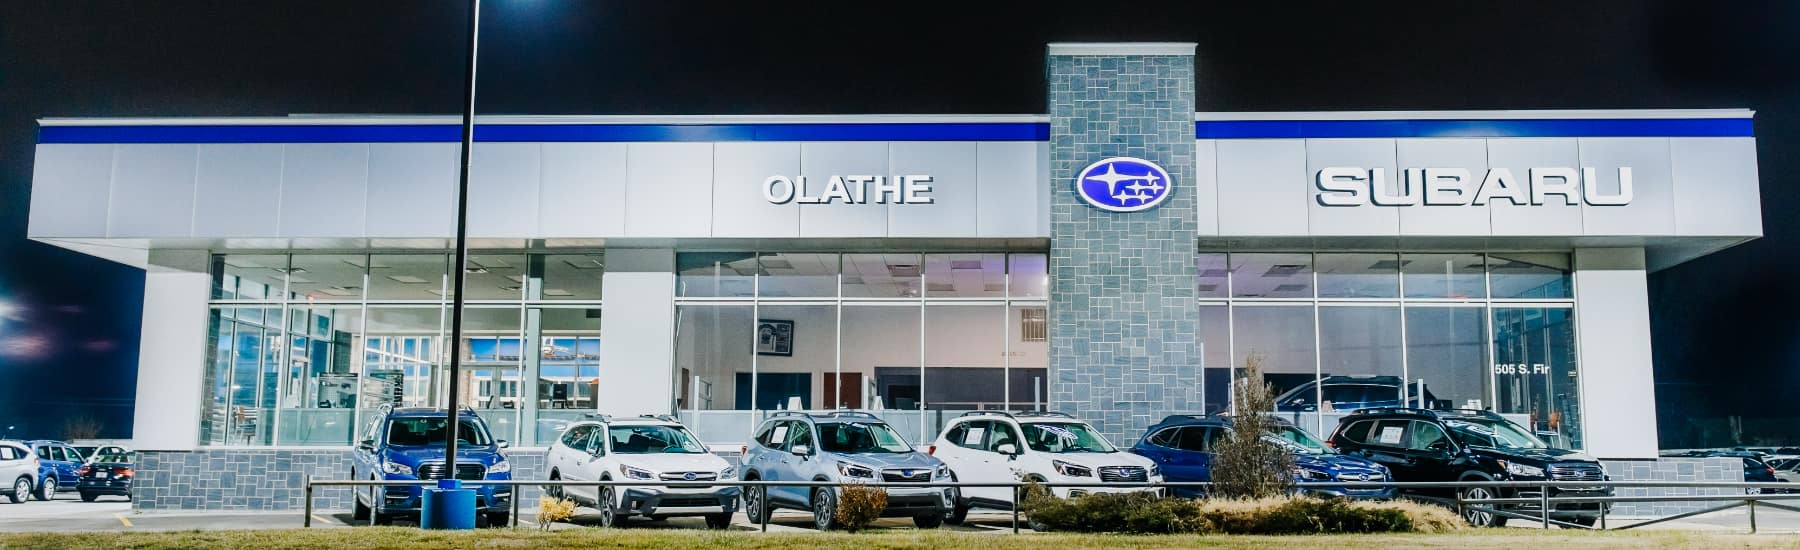 Subaru of Olathe - storefront